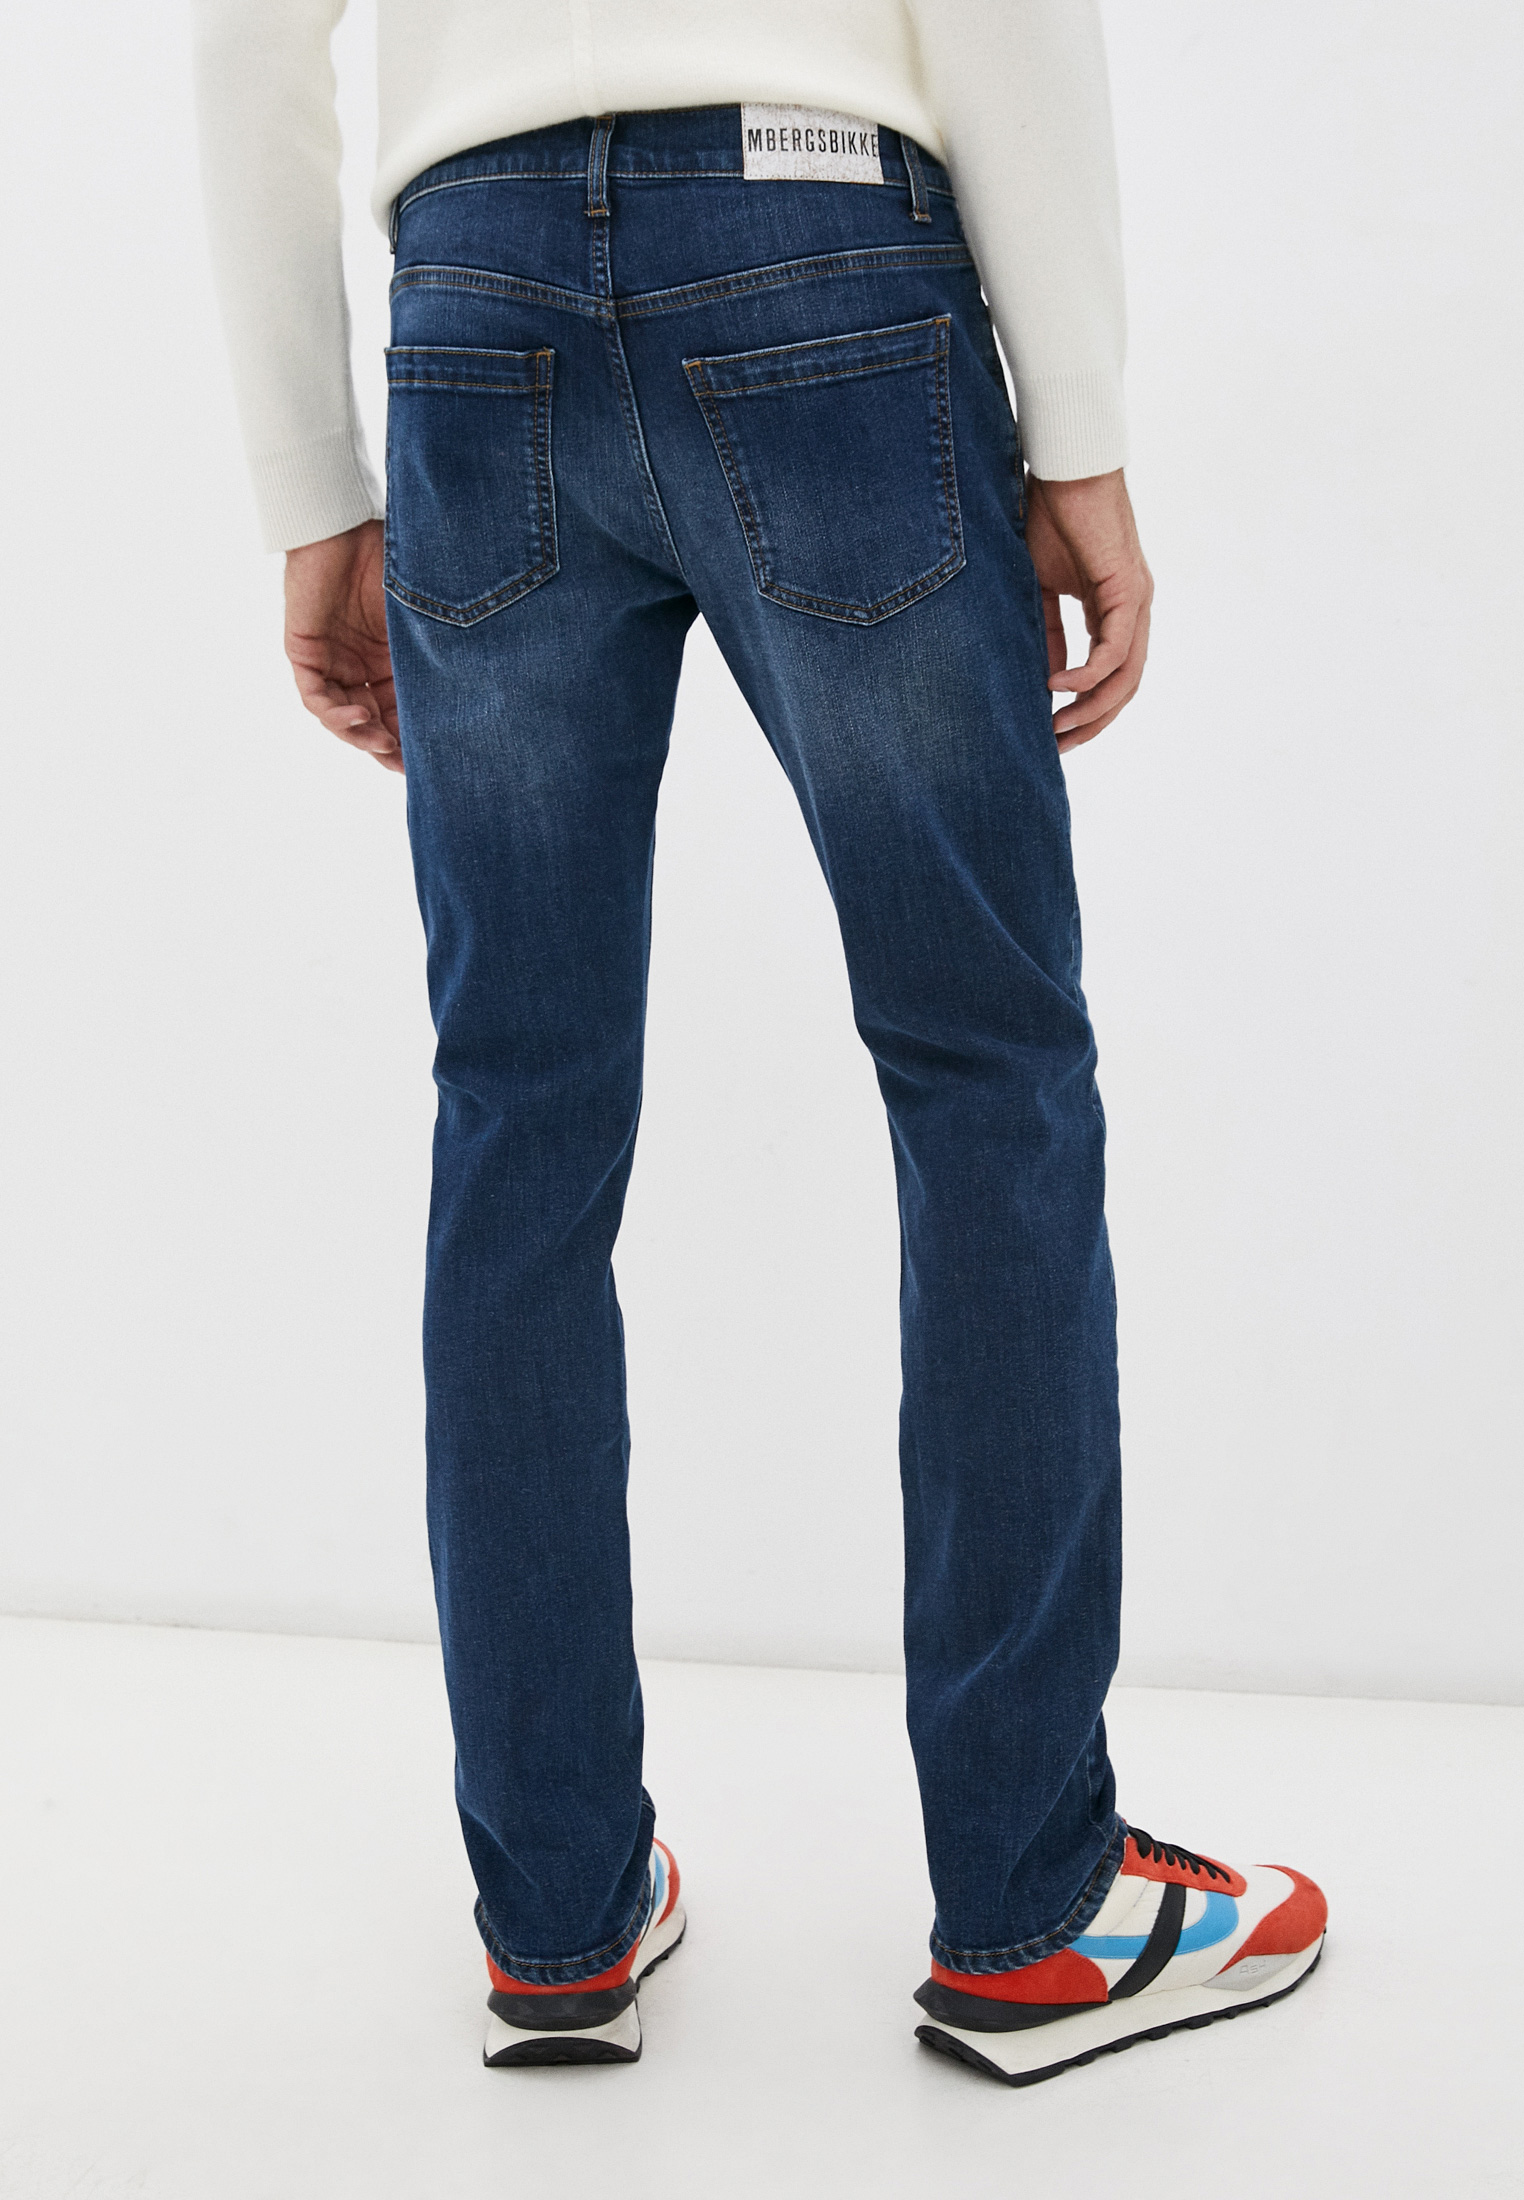 Мужские прямые джинсы Bikkembergs (Биккембергс) C Q 002 80 S 2932: изображение 4